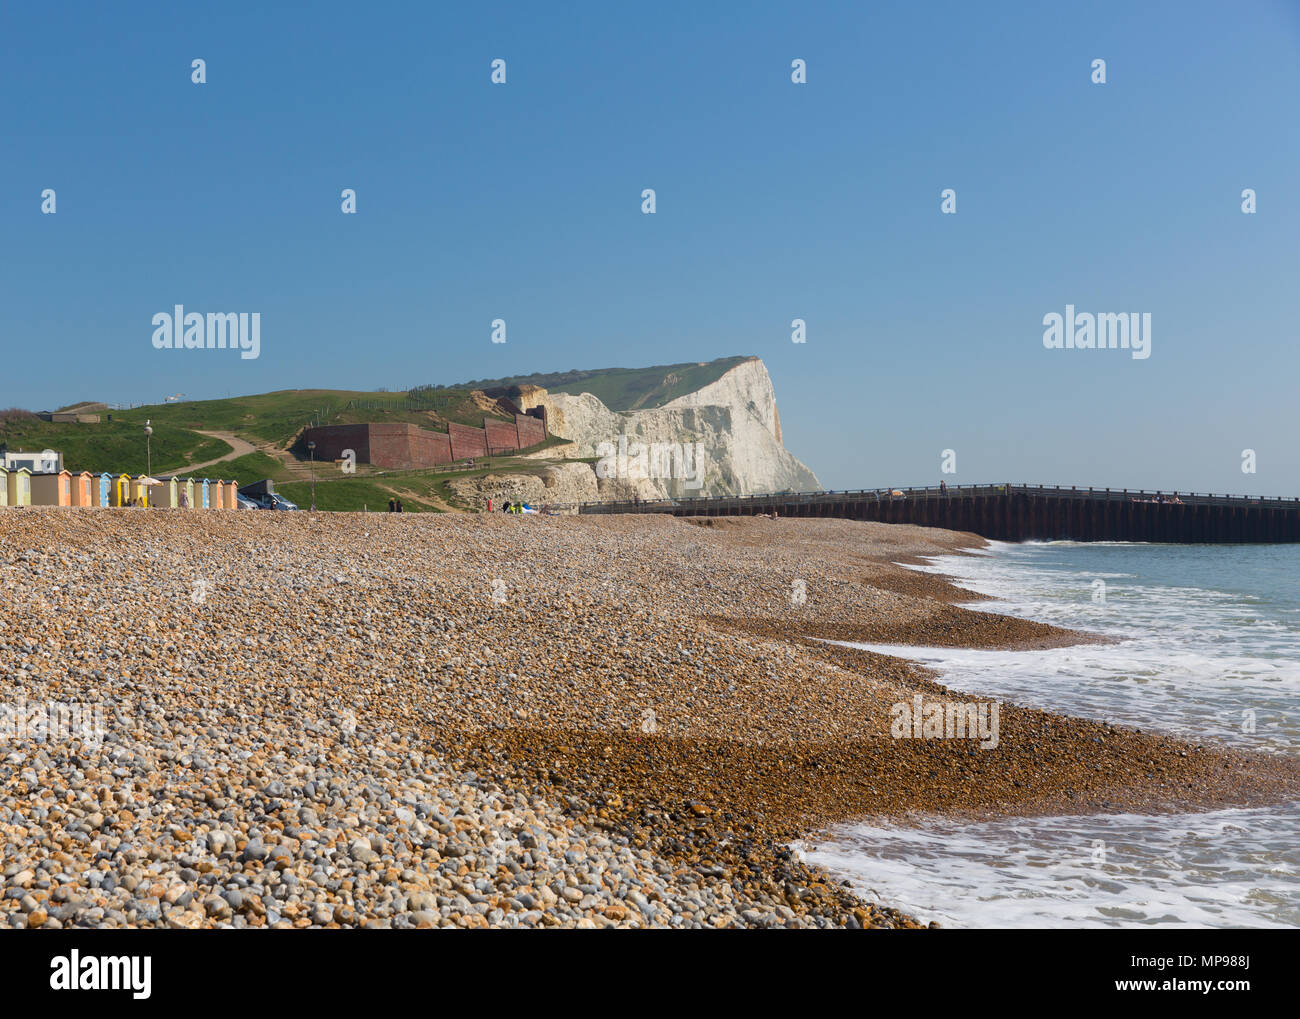 La plage de Seaford East Sussex uk avec de belles falaises de craie blanche Banque D'Images